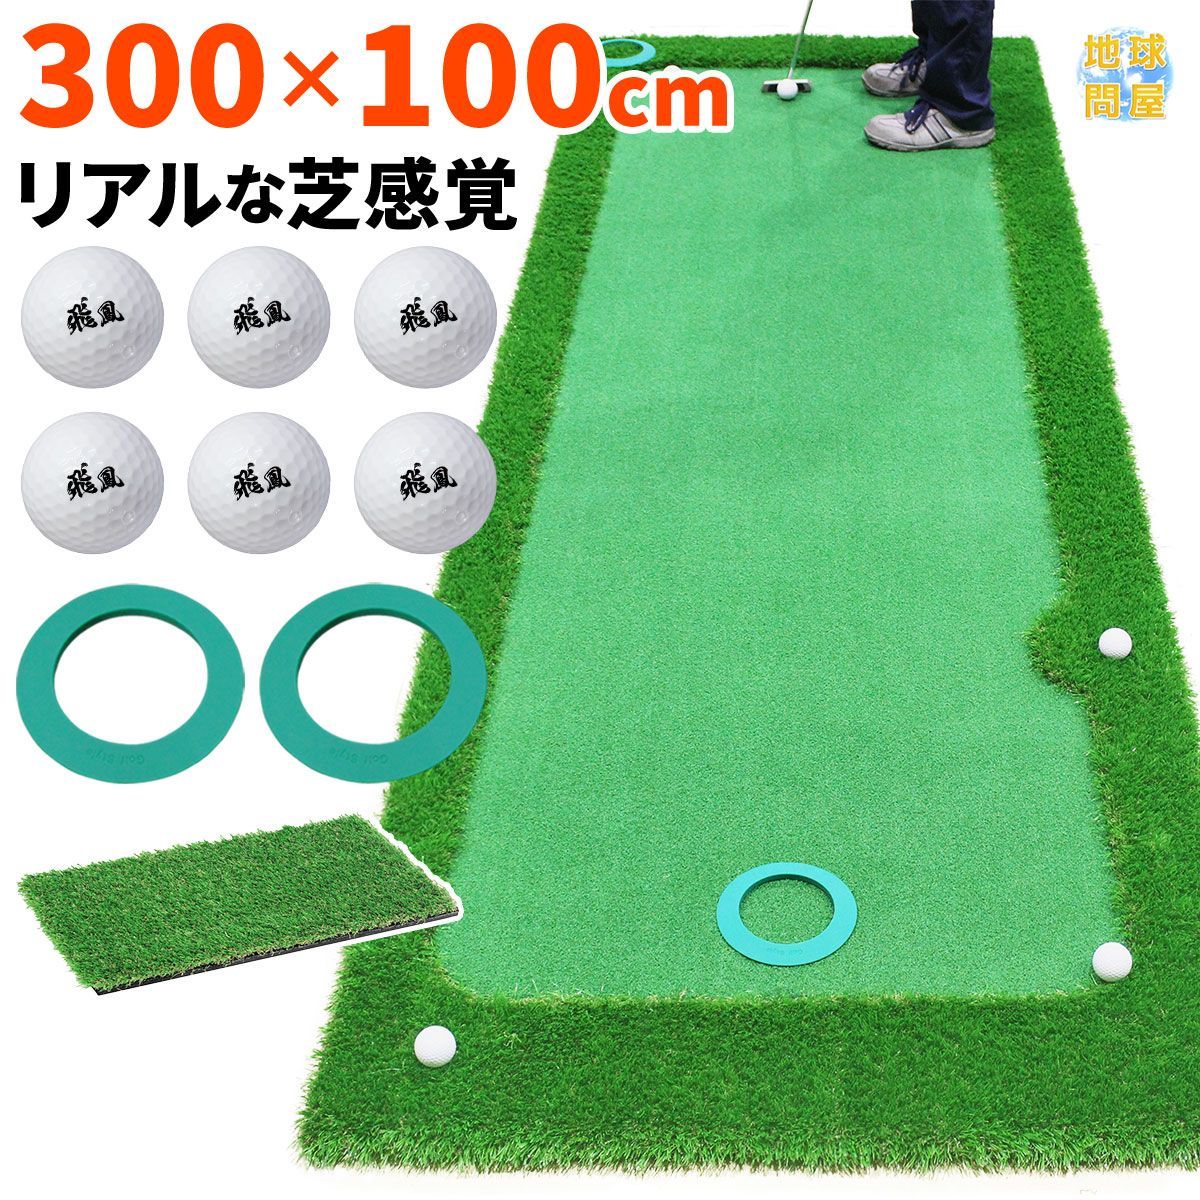 GolfStyle パターマット 3m ゴルフ パター 練習 マット ゴルフマット ...